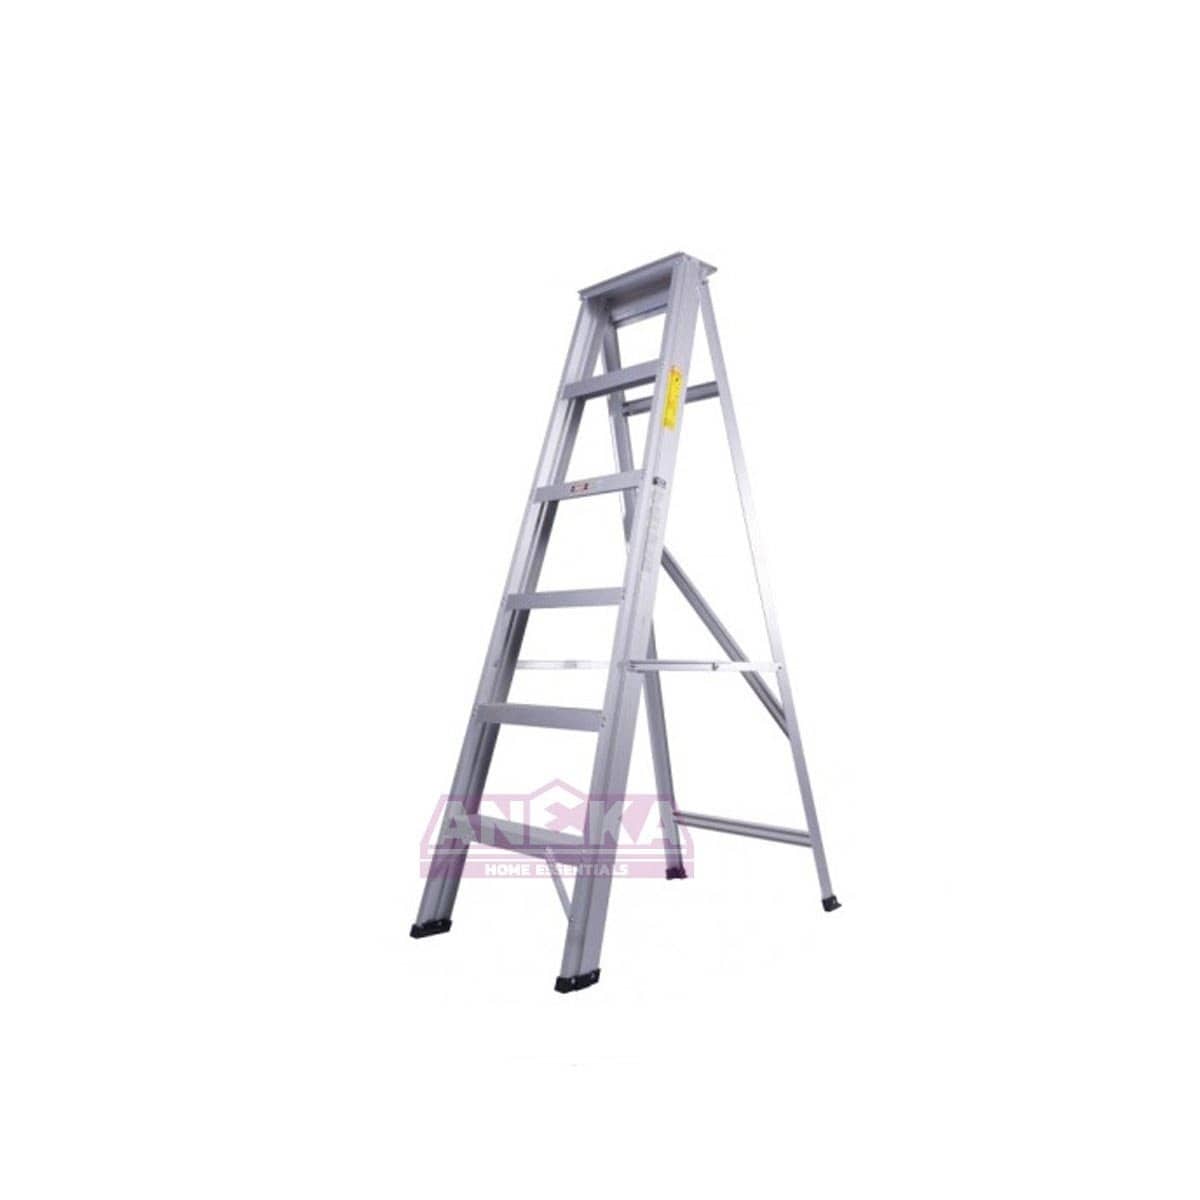 SUMO KING Heavy Duty Single Sided Ladder (7 STEPS)